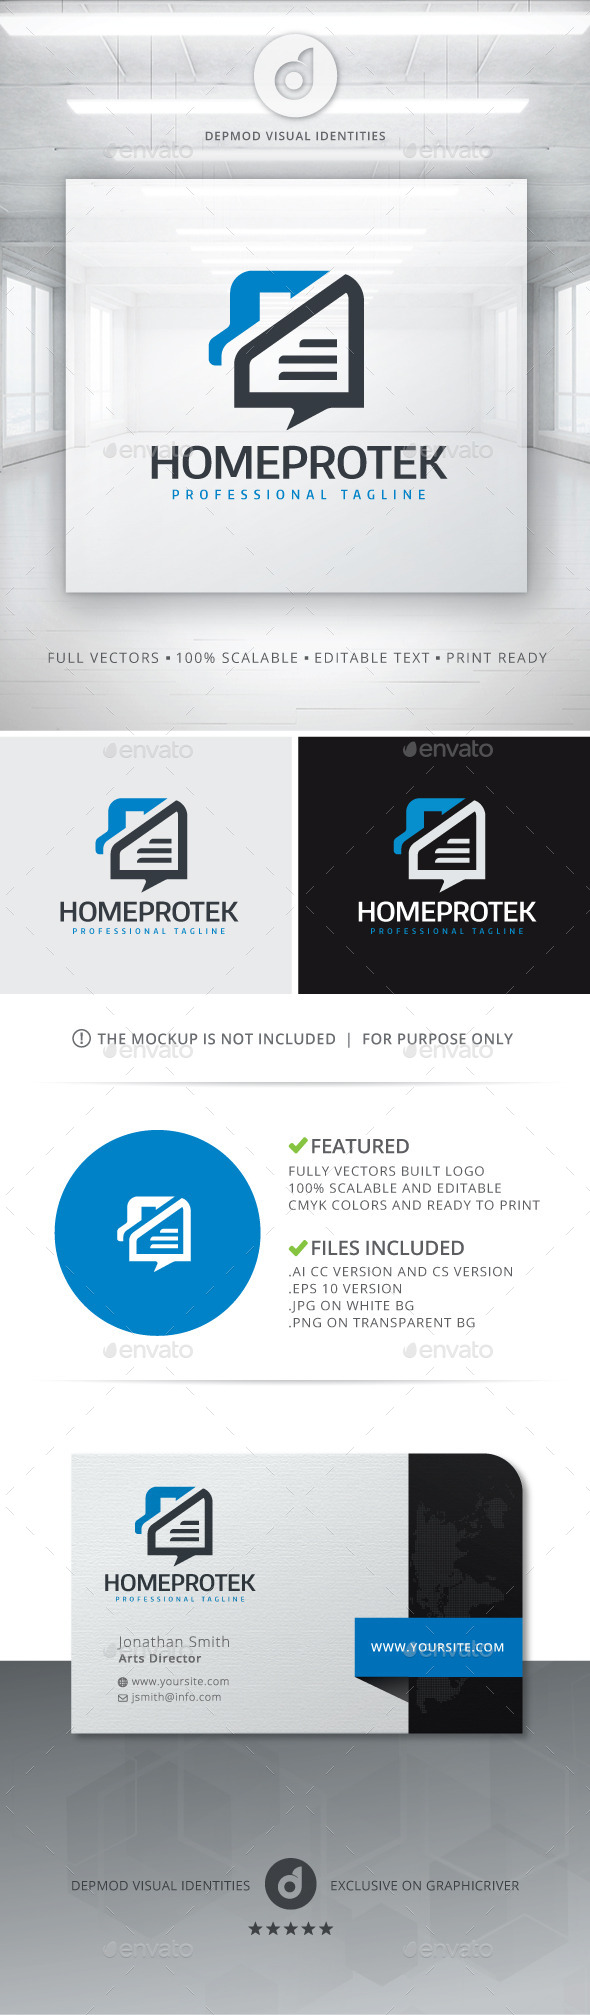 Home Protek Logo